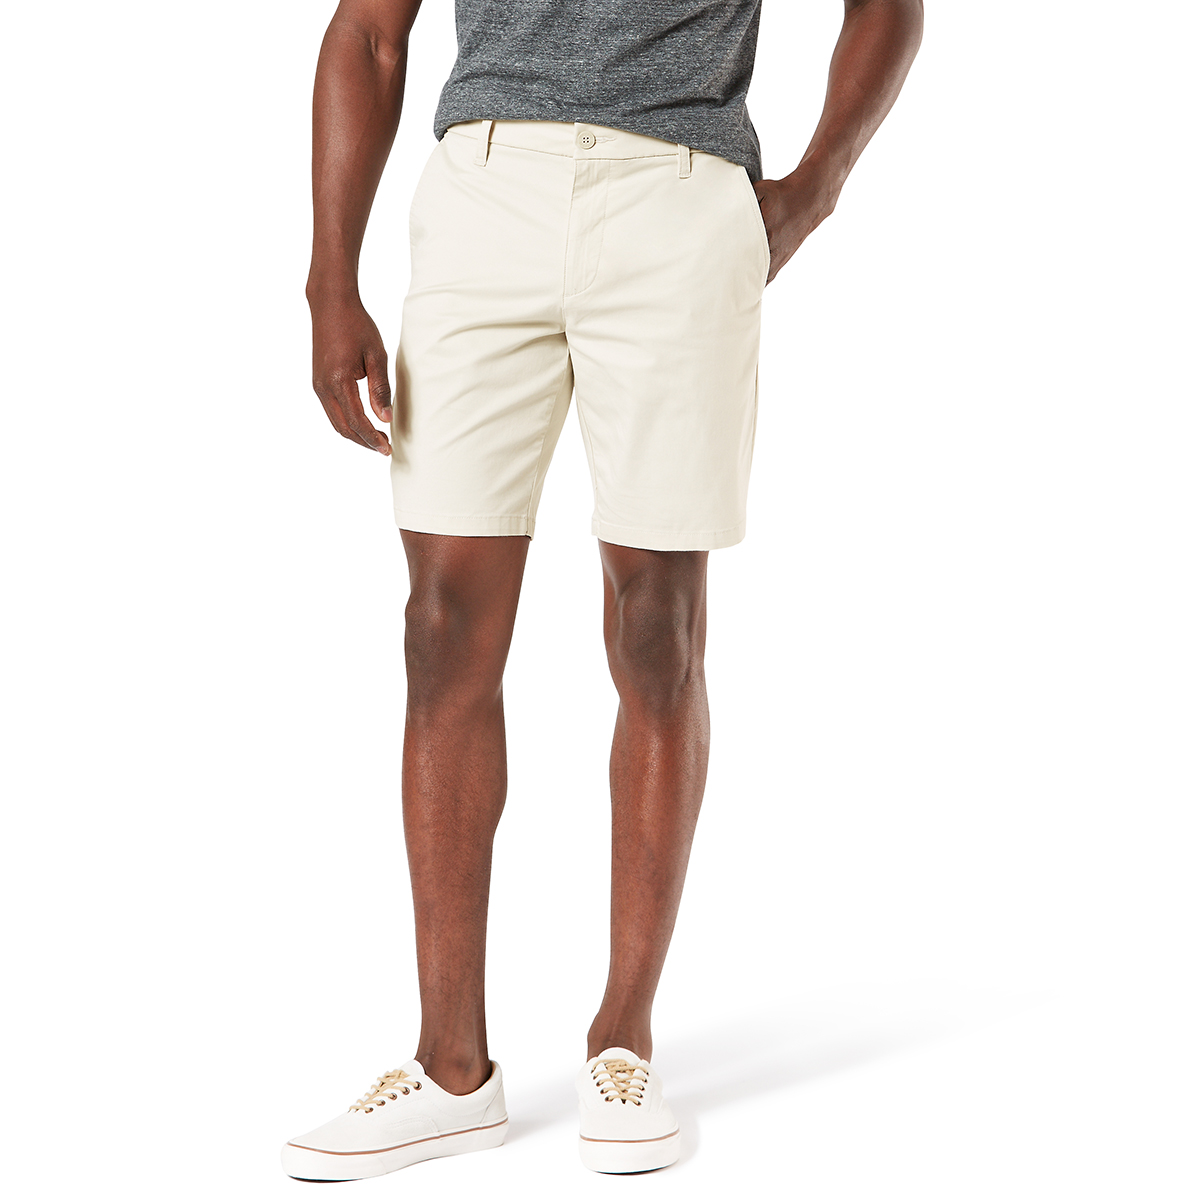 Dockers Men's Ultimate Straight Fit Short - White, 34